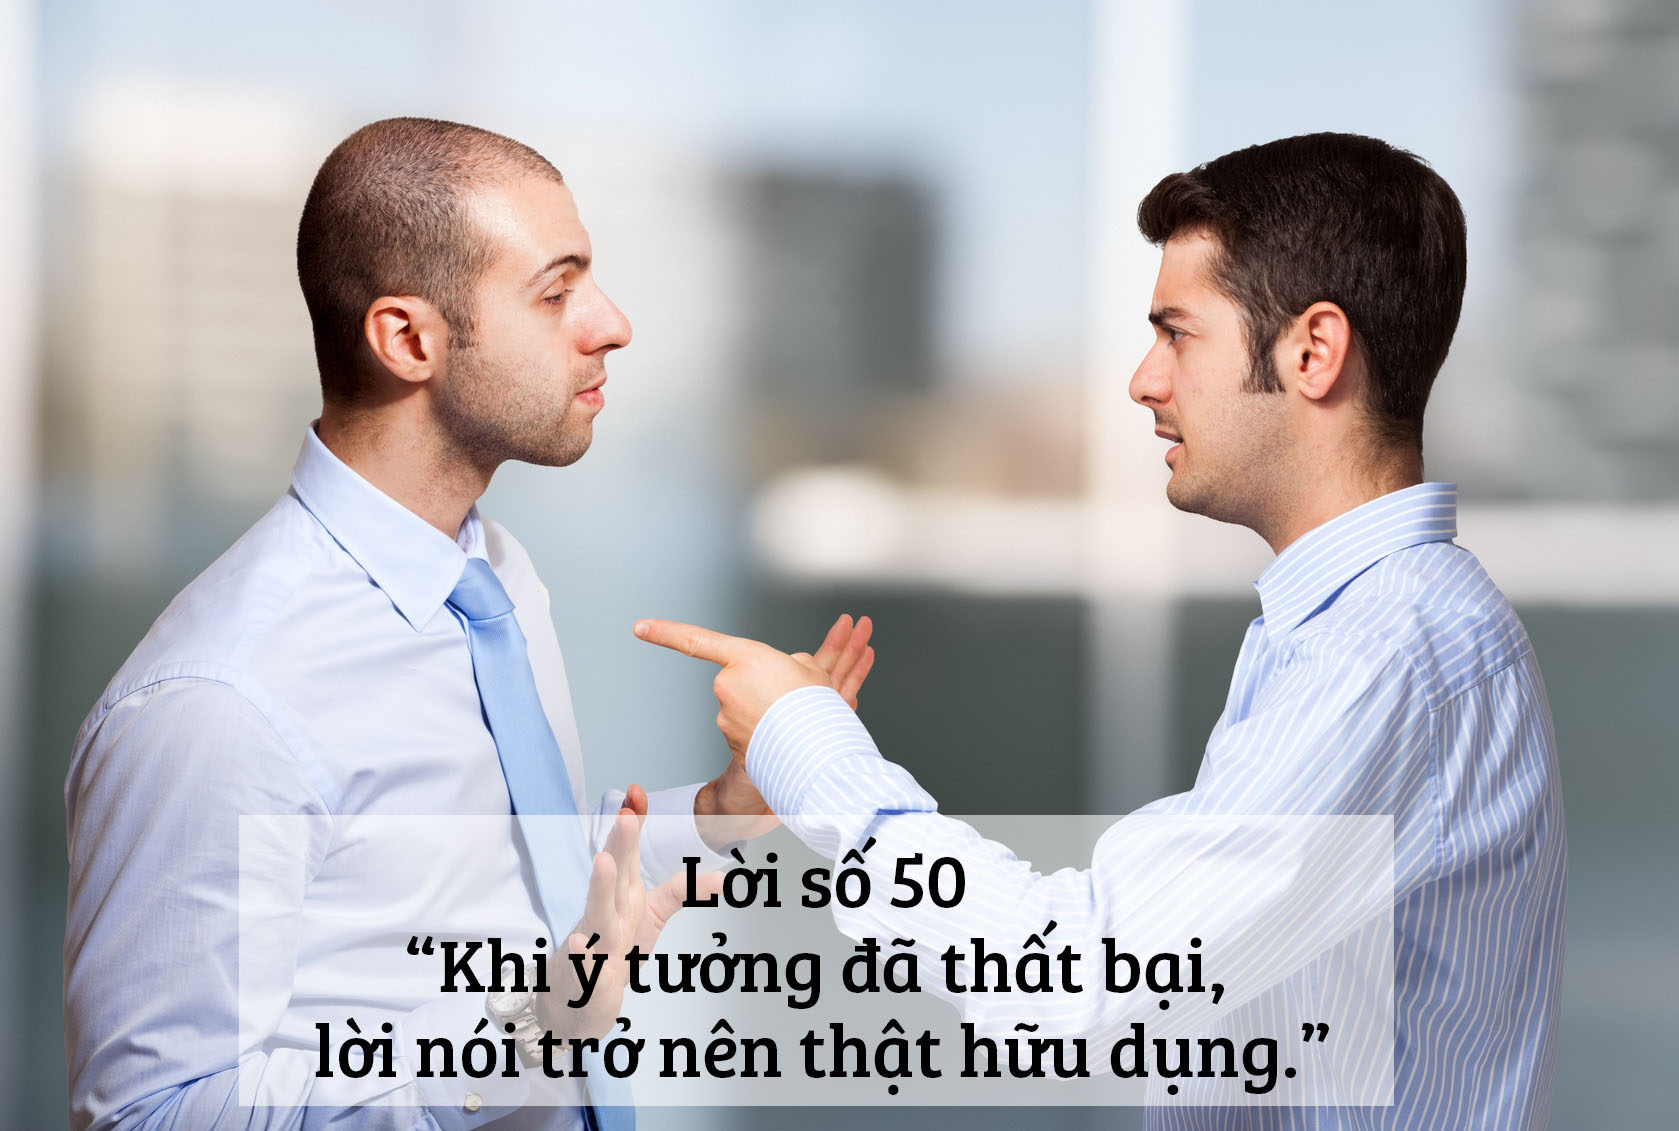 Businessman scolding a colleague